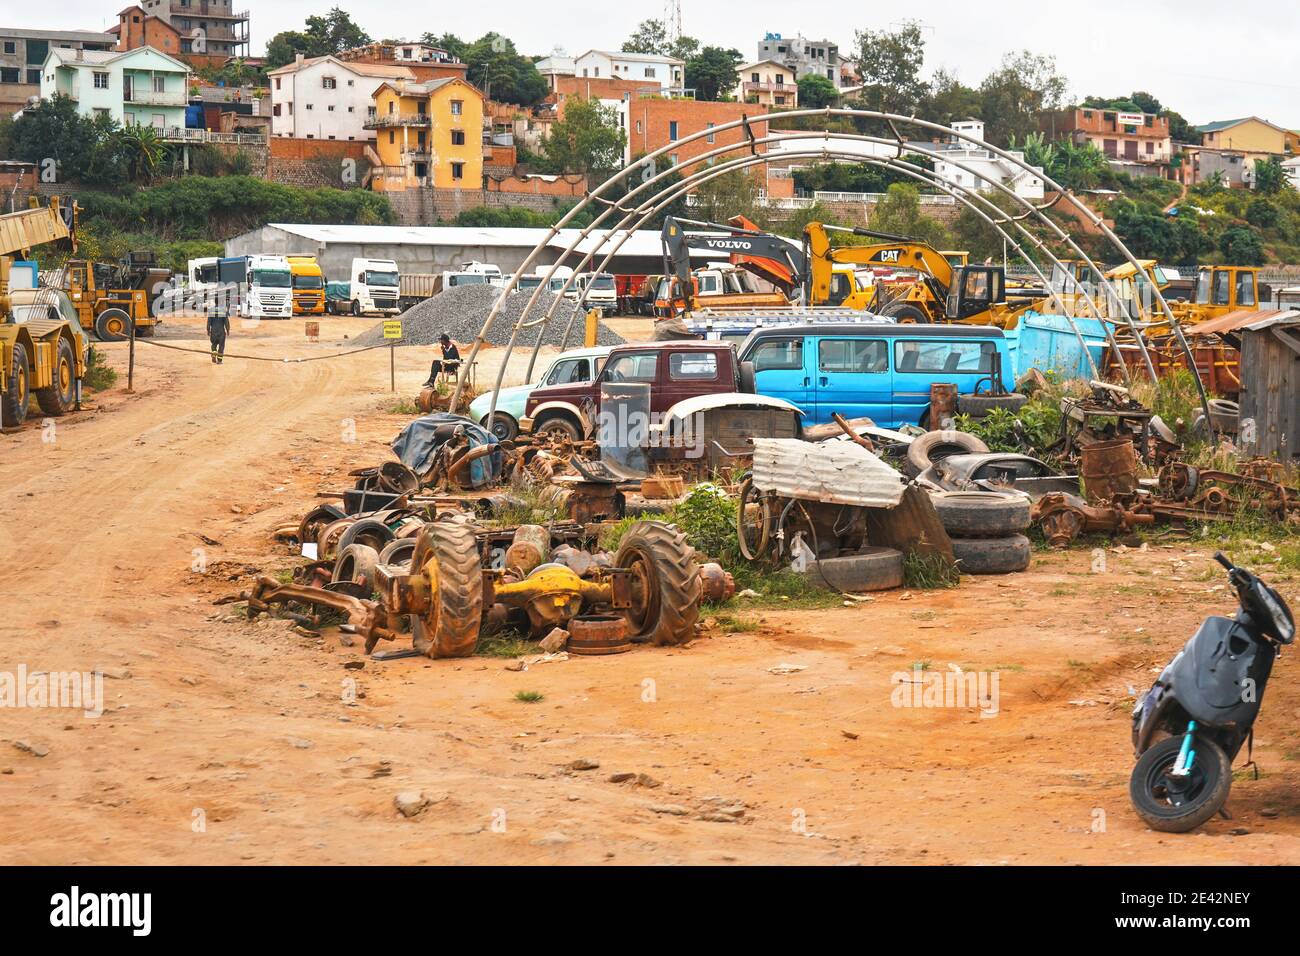 Antananarivo, Madagascar - 24 avril 2019 : diverses pièces d'automobiles sur terre de poussière rouge de petit cimetière près de la route principale, des camions et des véhicules de construction Banque D'Images